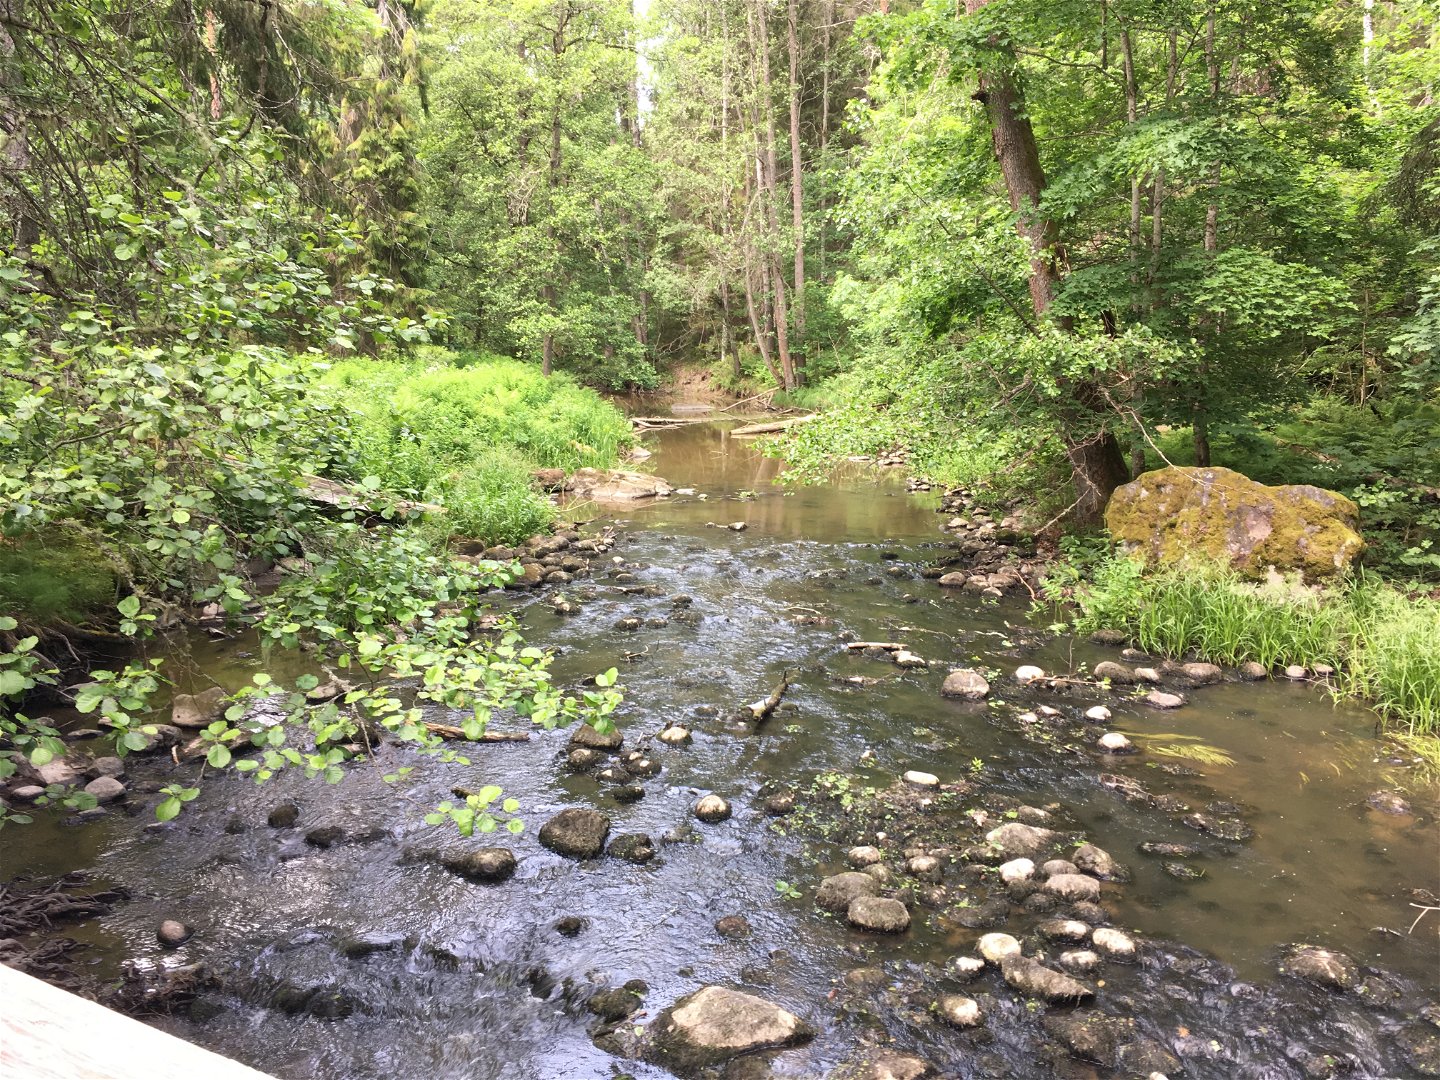 En å rinner genom en lummig dal. I ån finns många stenar av olika storlekar.